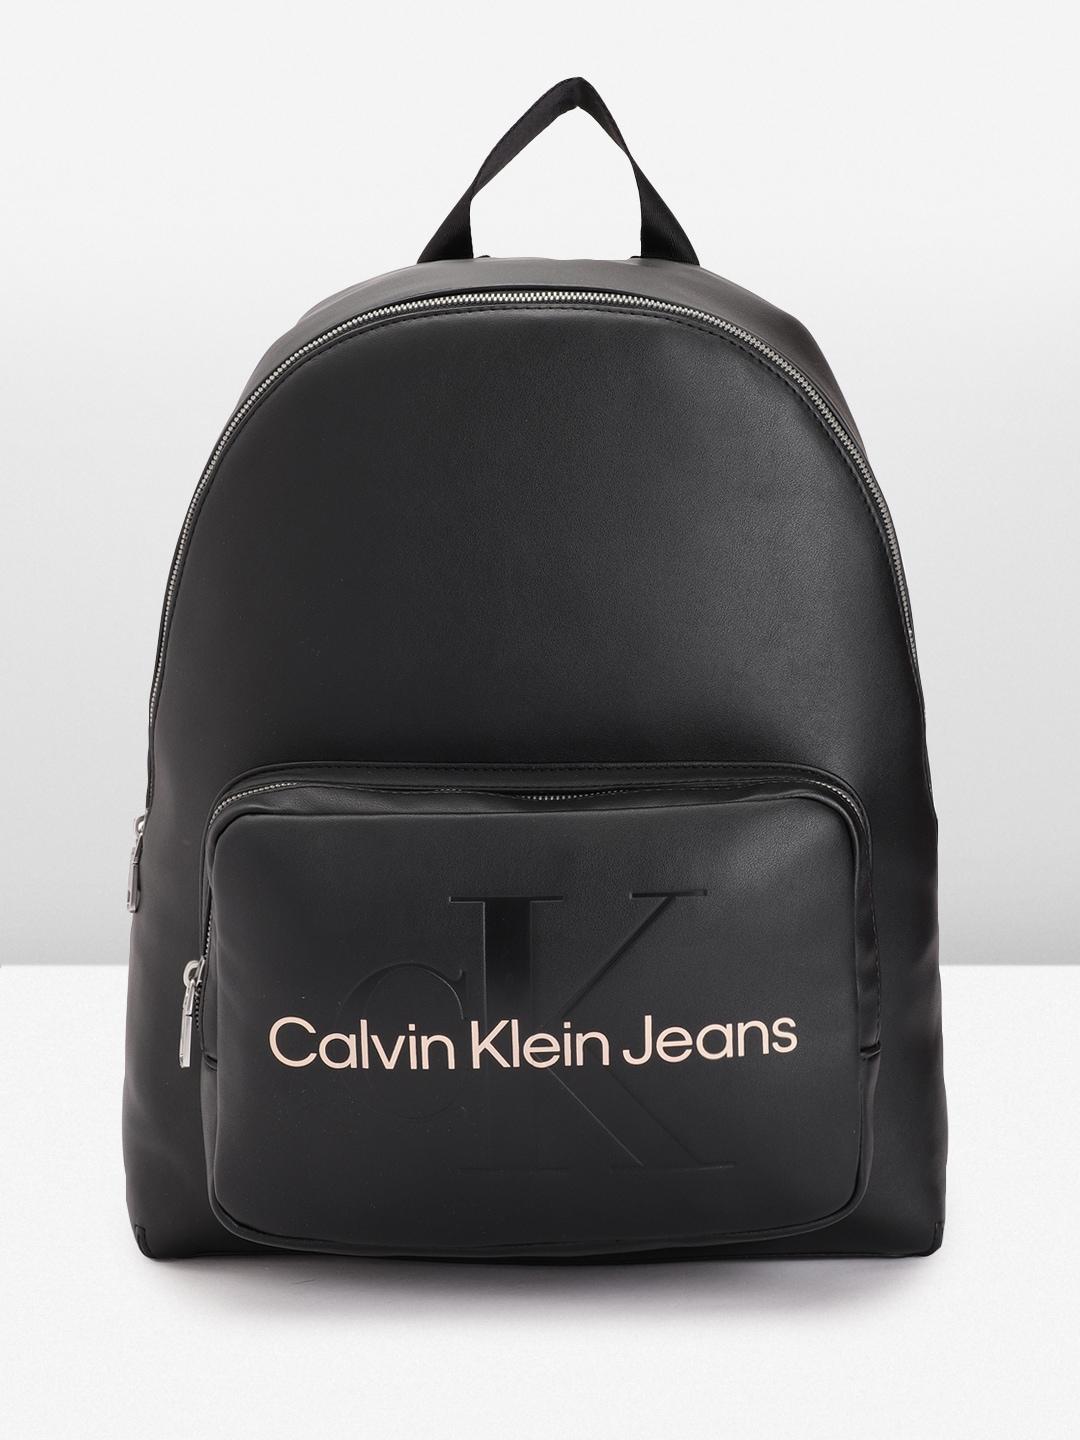 calvin-klein-women-brand-logo-printed-&-debossed-backpack